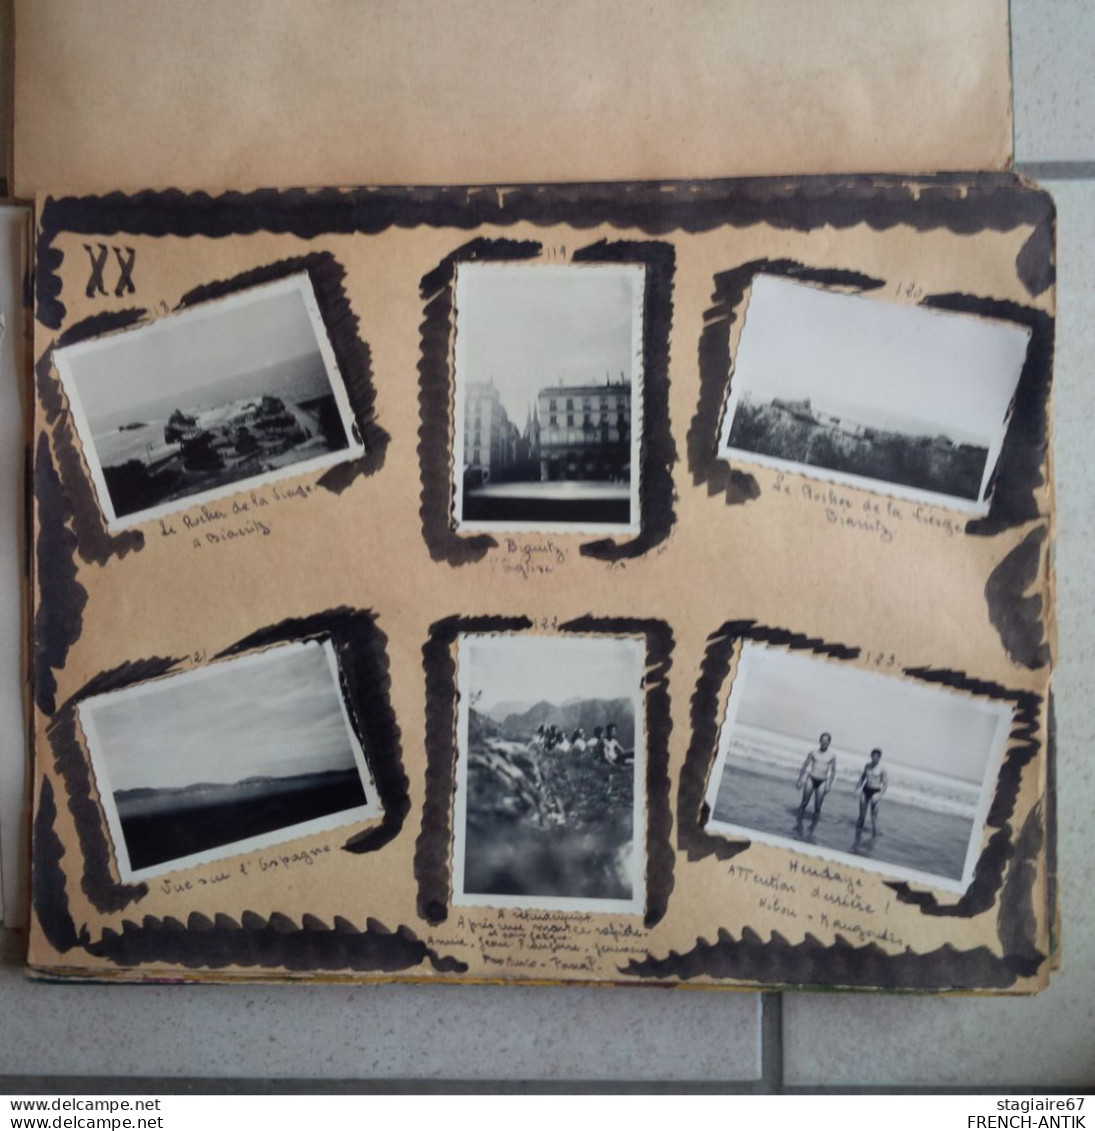 ALBUM PHOTO LE CAUTERETS 1949 SCOUTISME DEGUISEMENT CAMPING ENVIRON 170 - Alben & Sammlungen